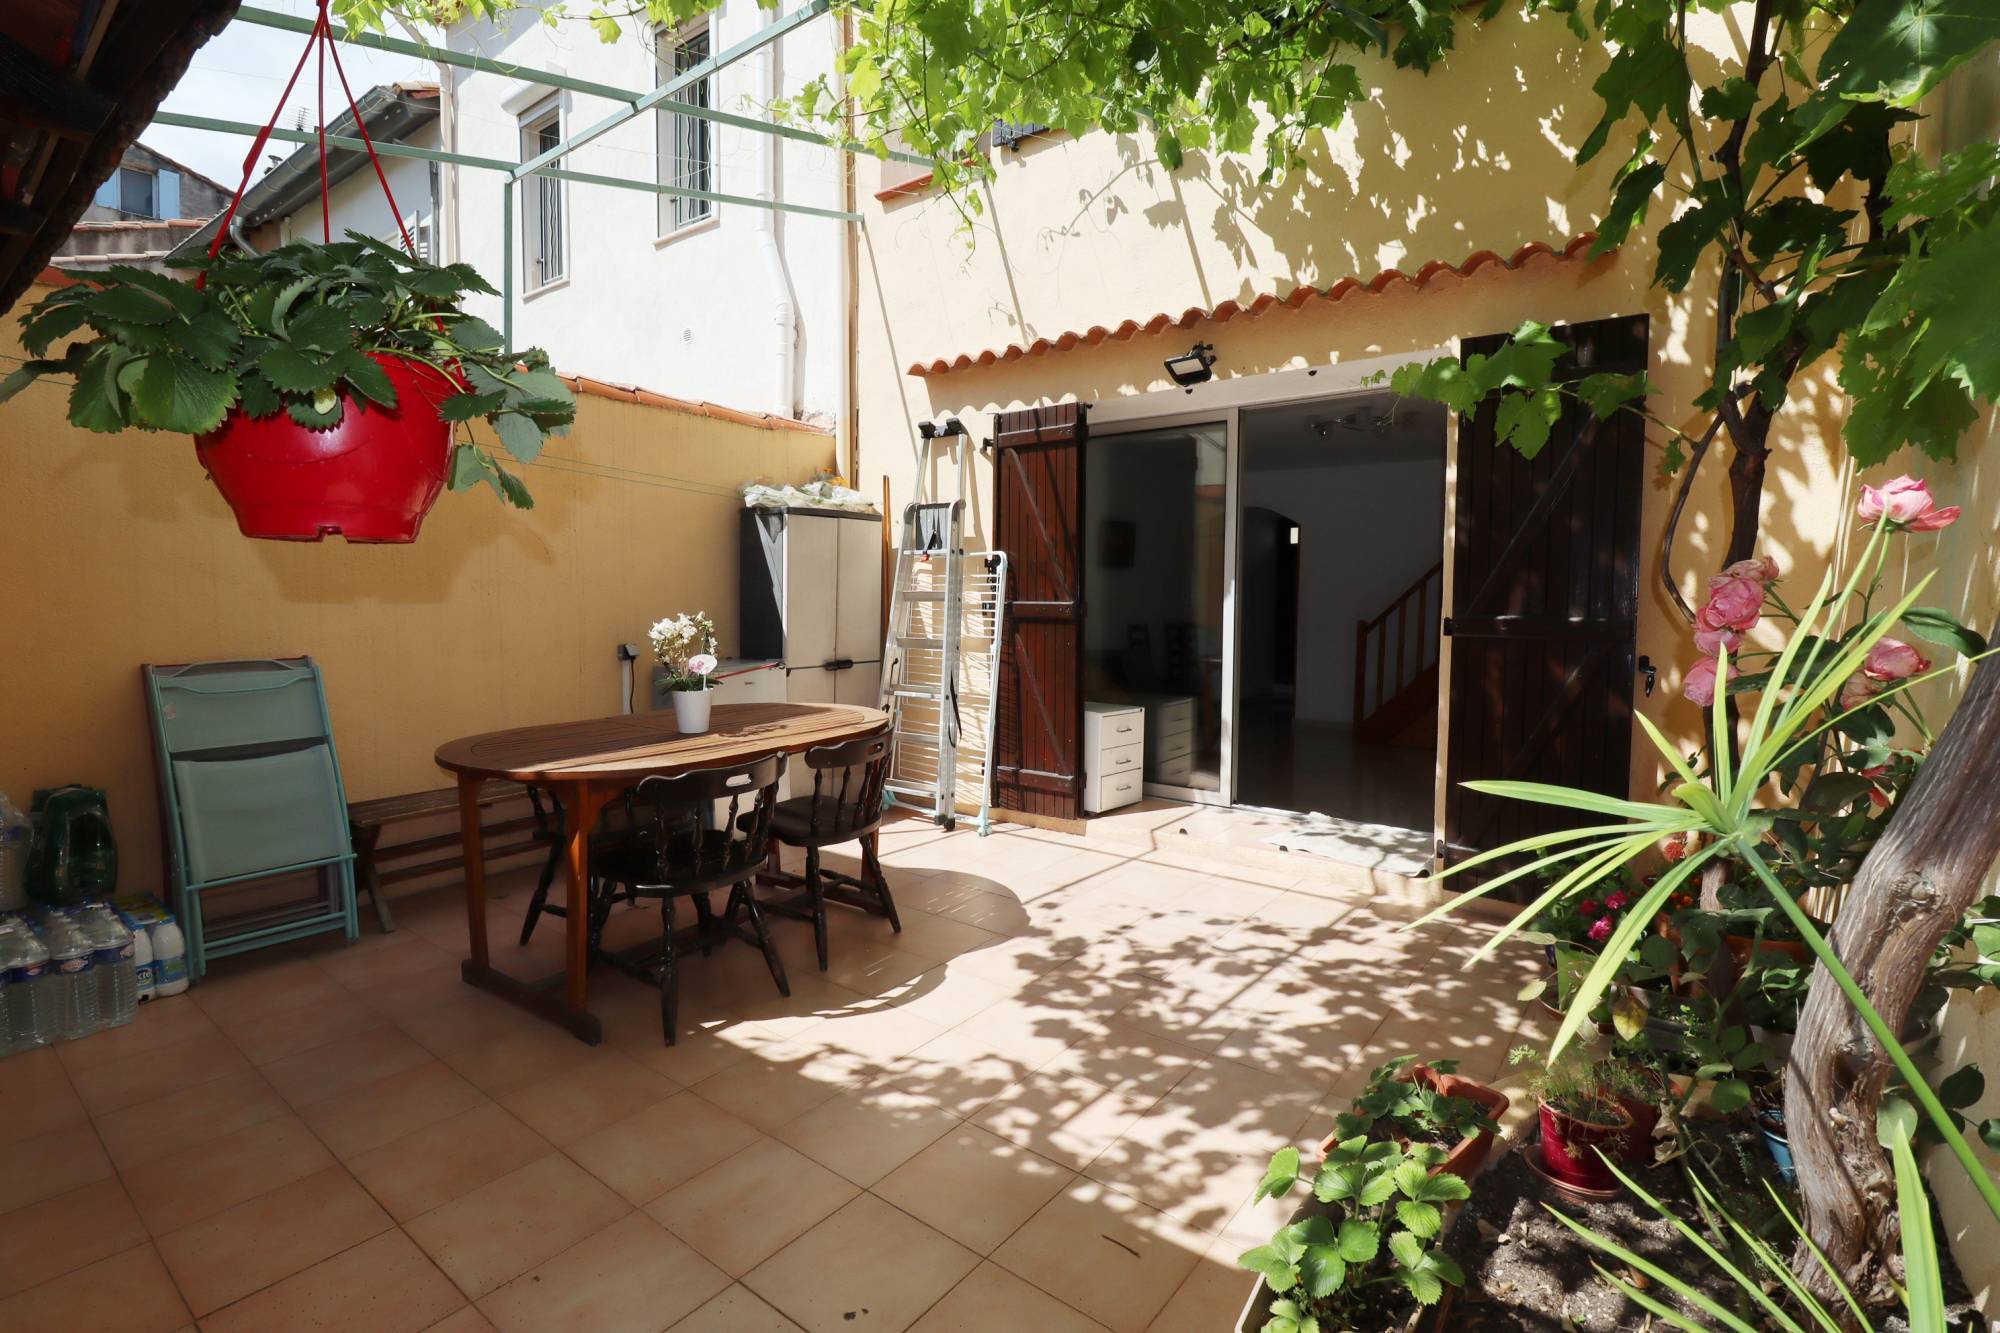 A vendre maison de village de 91 m² avec terrasse de 20 m² situé en plein coeur du village de Saint Barnabé 13012 Marseille 